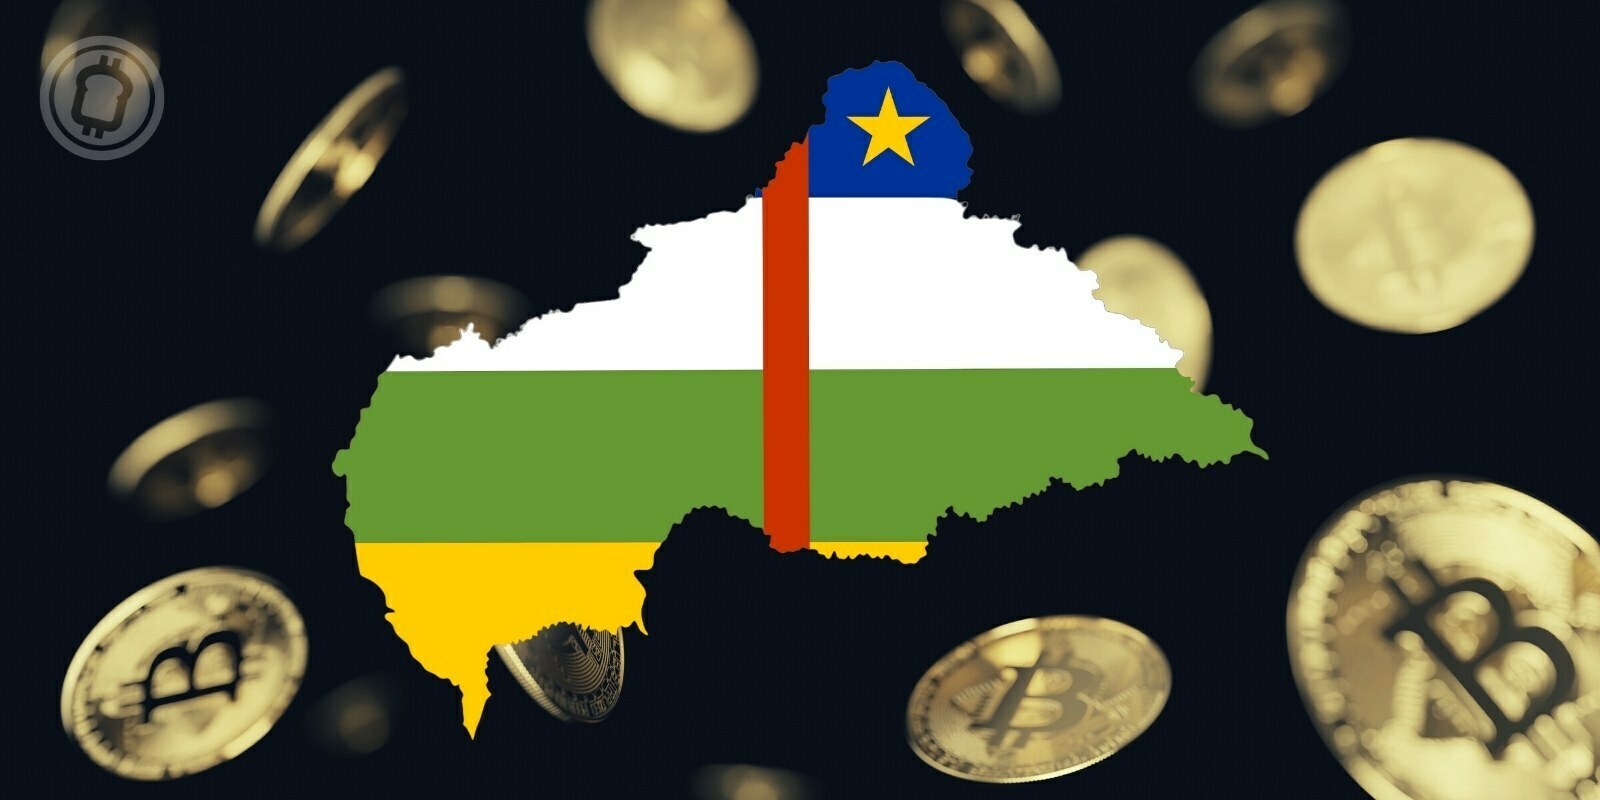 La République centrafricaine adopte le Bitcoin (BTC) comme monnaie légale